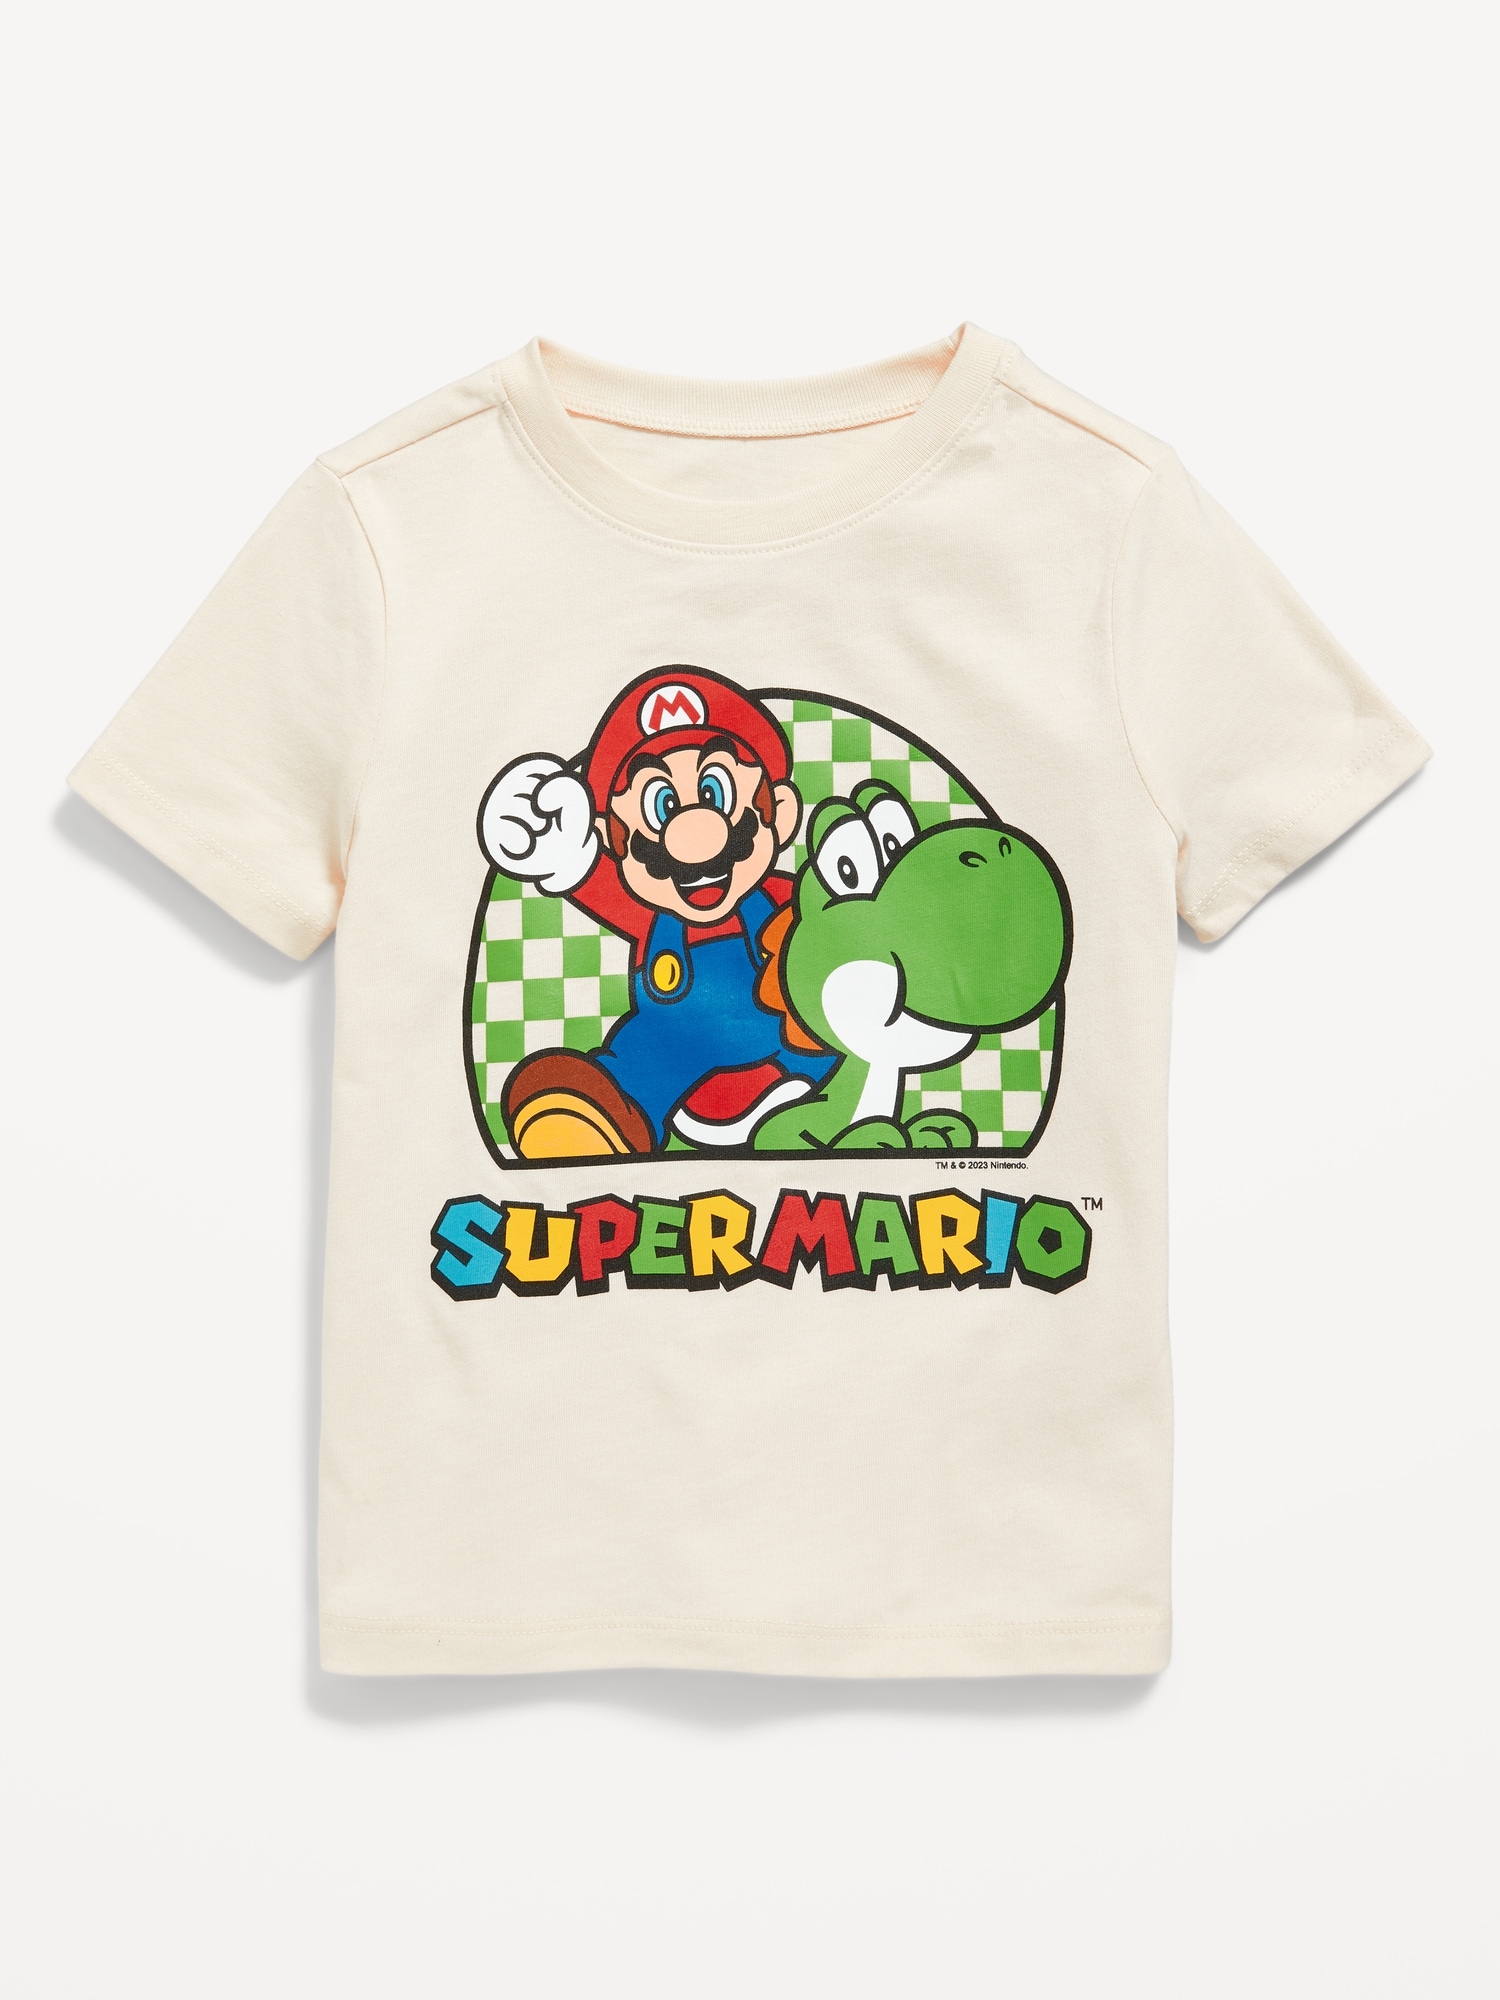 Super Mario Bros. Unisex Graphic T-Shirt for Toddler